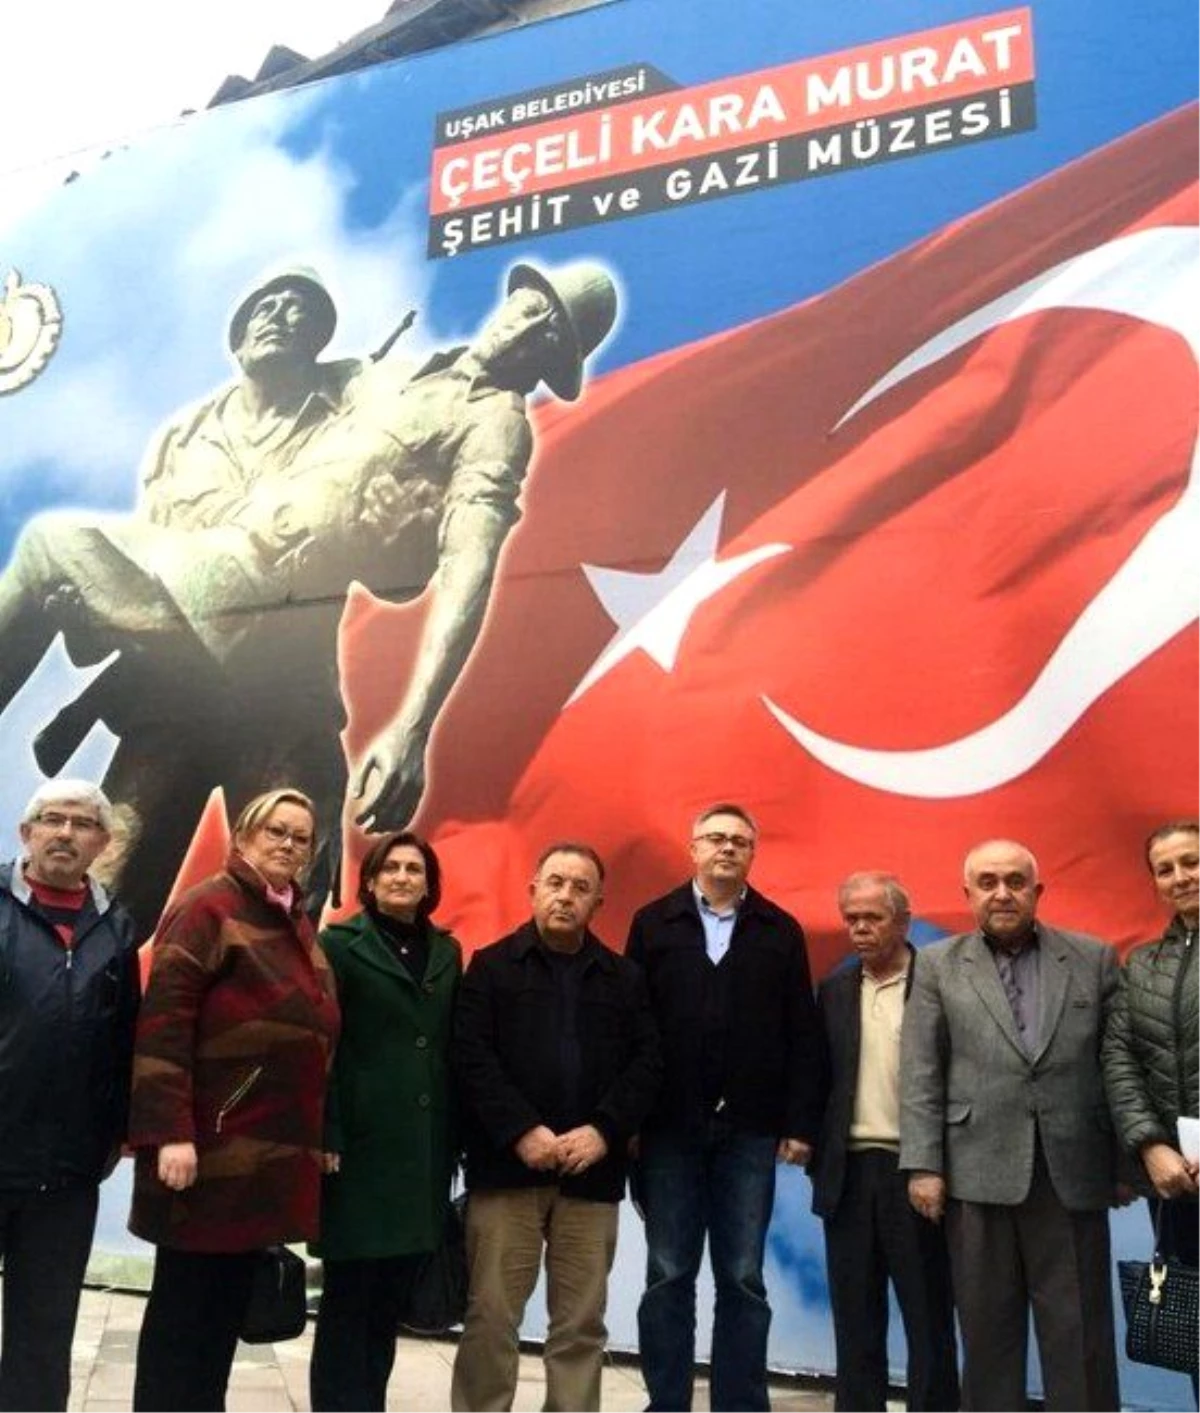 18 Mart Öncesi, Çeçeli Kara Murat Şehit ve Gazi Müzesini Ziyaret